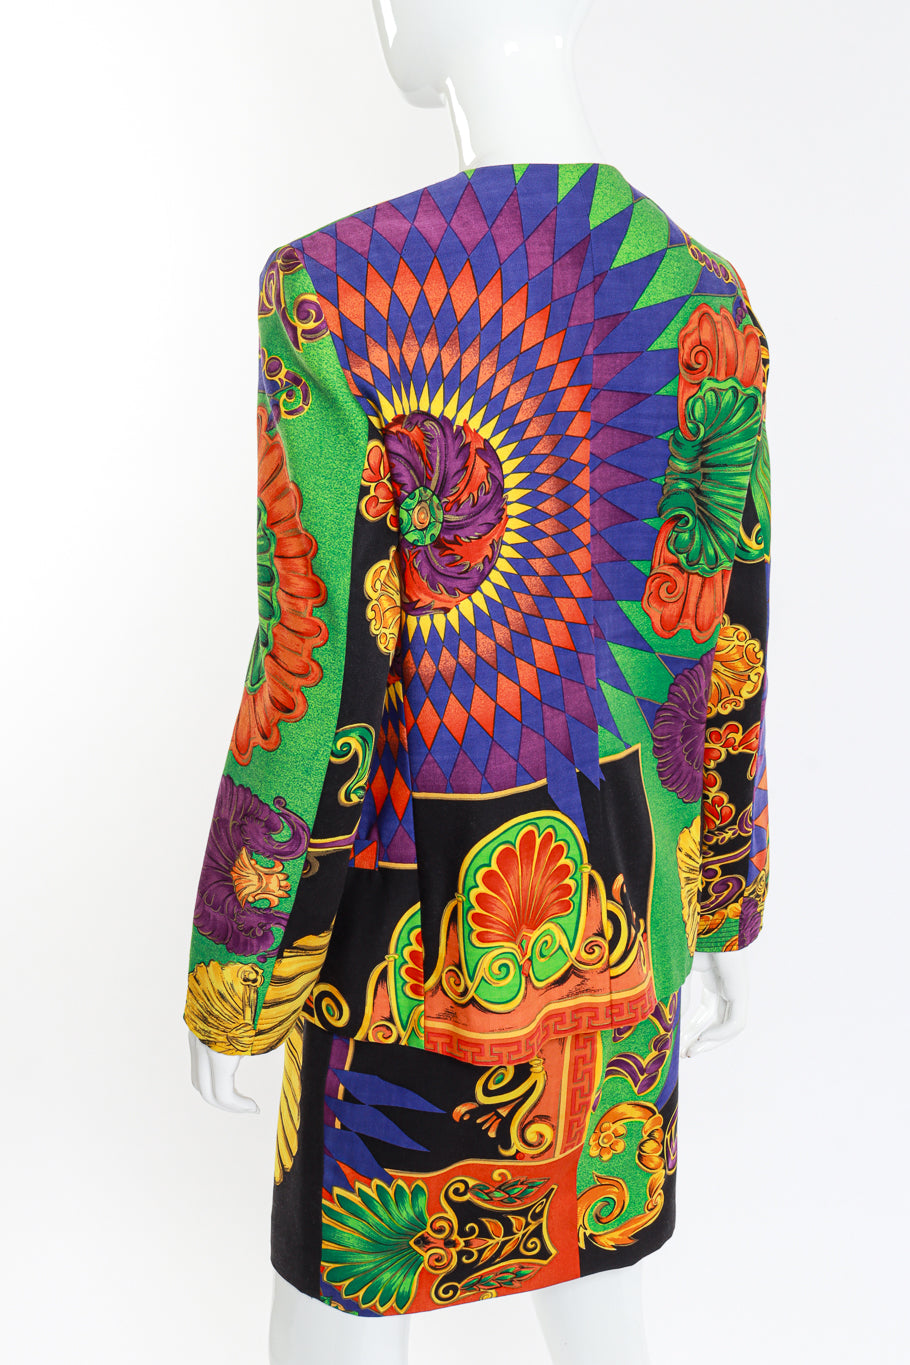 Versace 1991 Cornucopia of Prints Skirt Suit back mannequin @RECESS LA